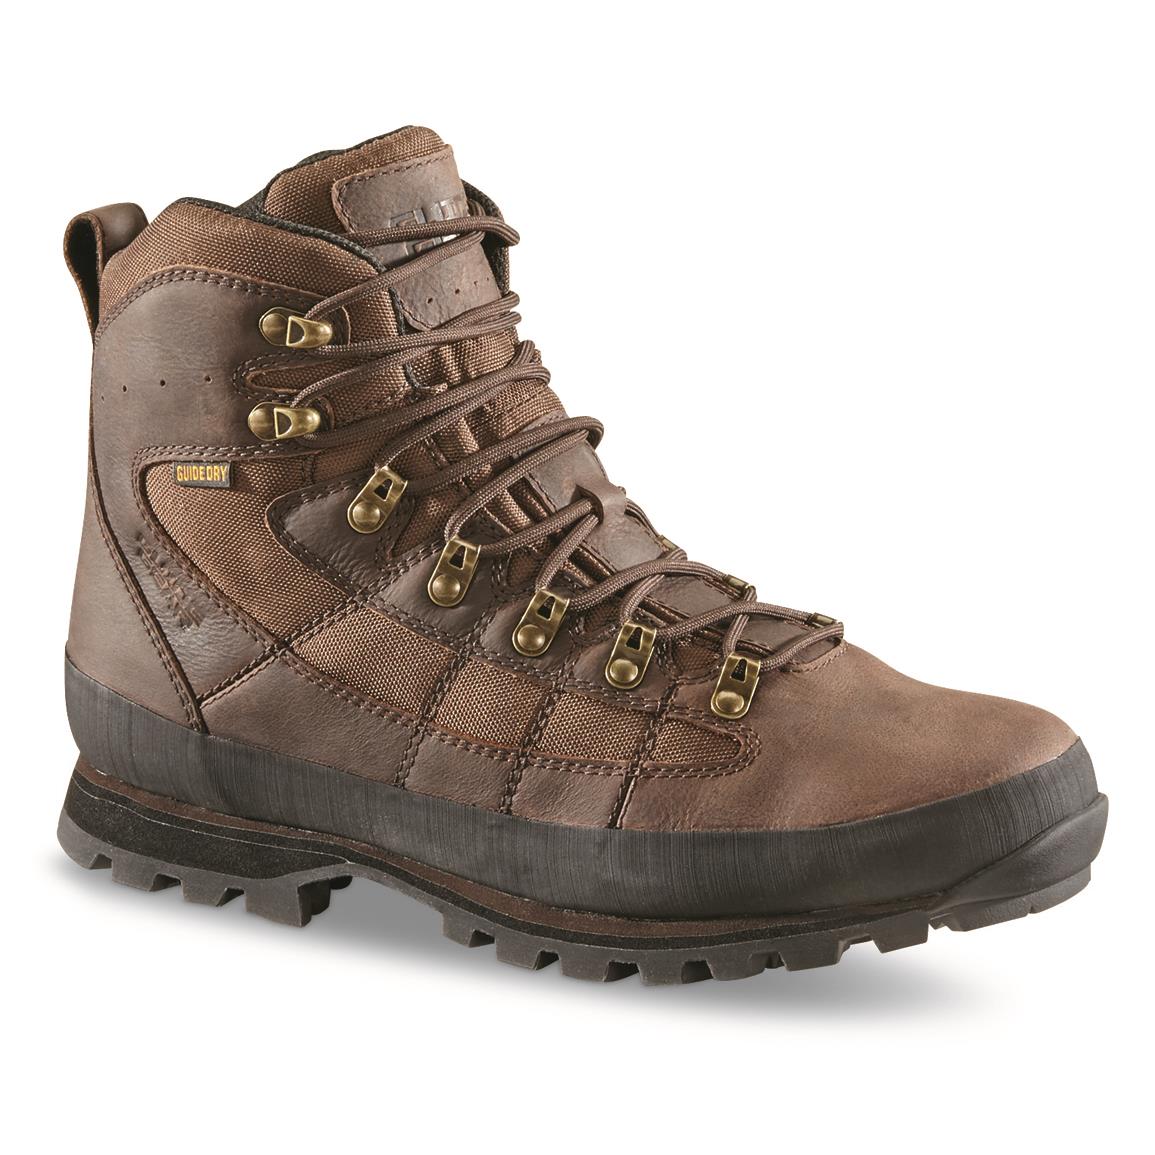 Guide Gear Men's Acadia II Waterproof Hiking Boots, Brown